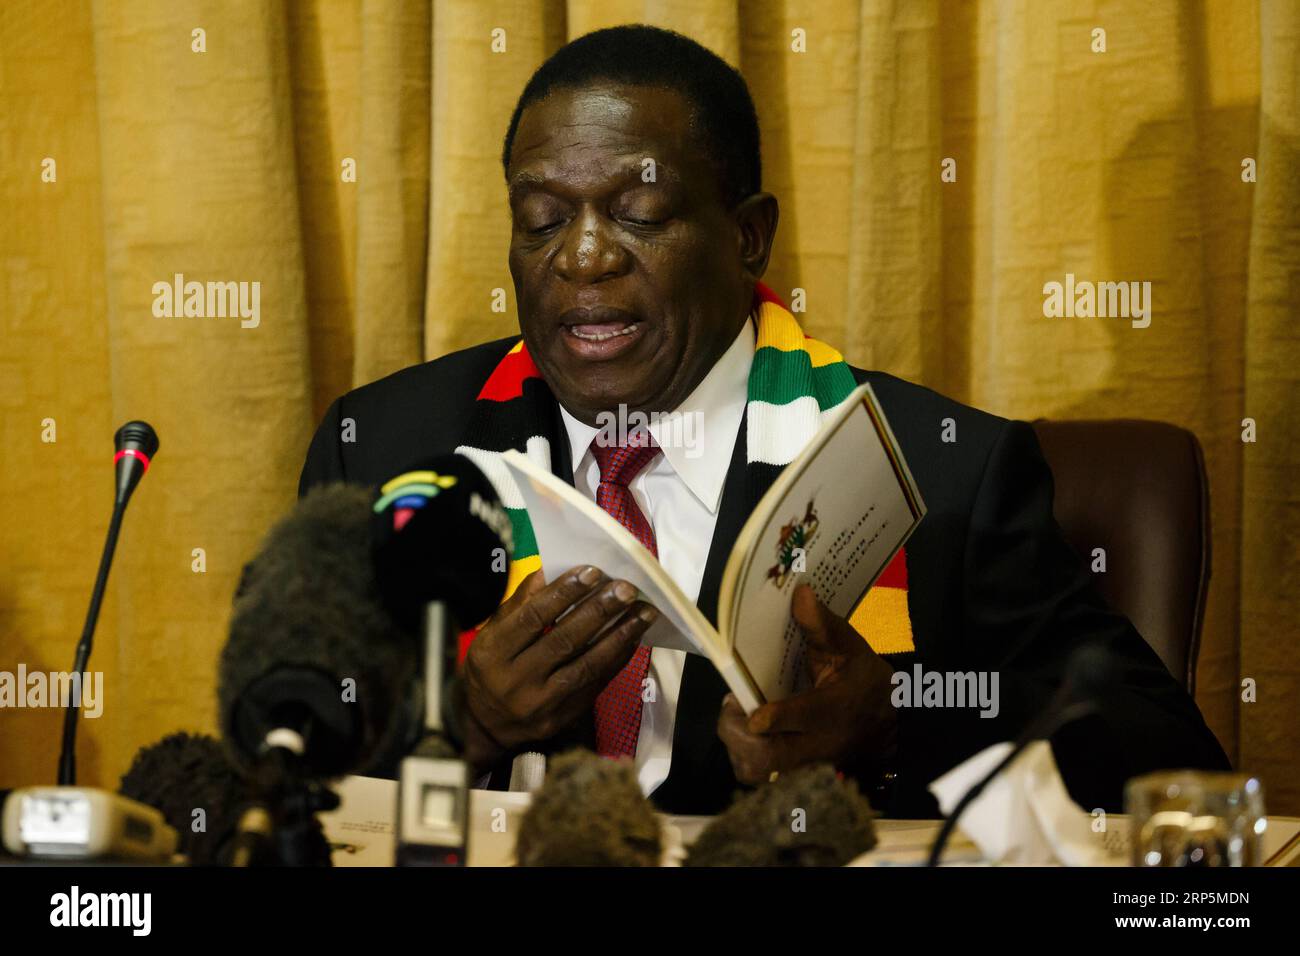 (181218) -- HARARE, le 18 décembre 2018 -- le président zimbabwéen Emmerson Mnangagwa prend la parole lors d'une conférence de presse à Harare, Zimbabwe, le 18 décembre 2018. L armée zimbabwéenne a utilisé une force disproportionnée pour réprimer les violences postélectorales qui ont eu lieu le 1 août à Harare, entraînant la mort de six personnes et des dommages matériels, selon le rapport de la Commission d enquête publié mardi. ZIMBABWE-HARARE-MNANGAGWA-RAPPORT DE VIOLENCE POST-ÉLECTORALE SHAUNXJUSA PUBLICATIONXNOTXINXCHN Banque D'Images